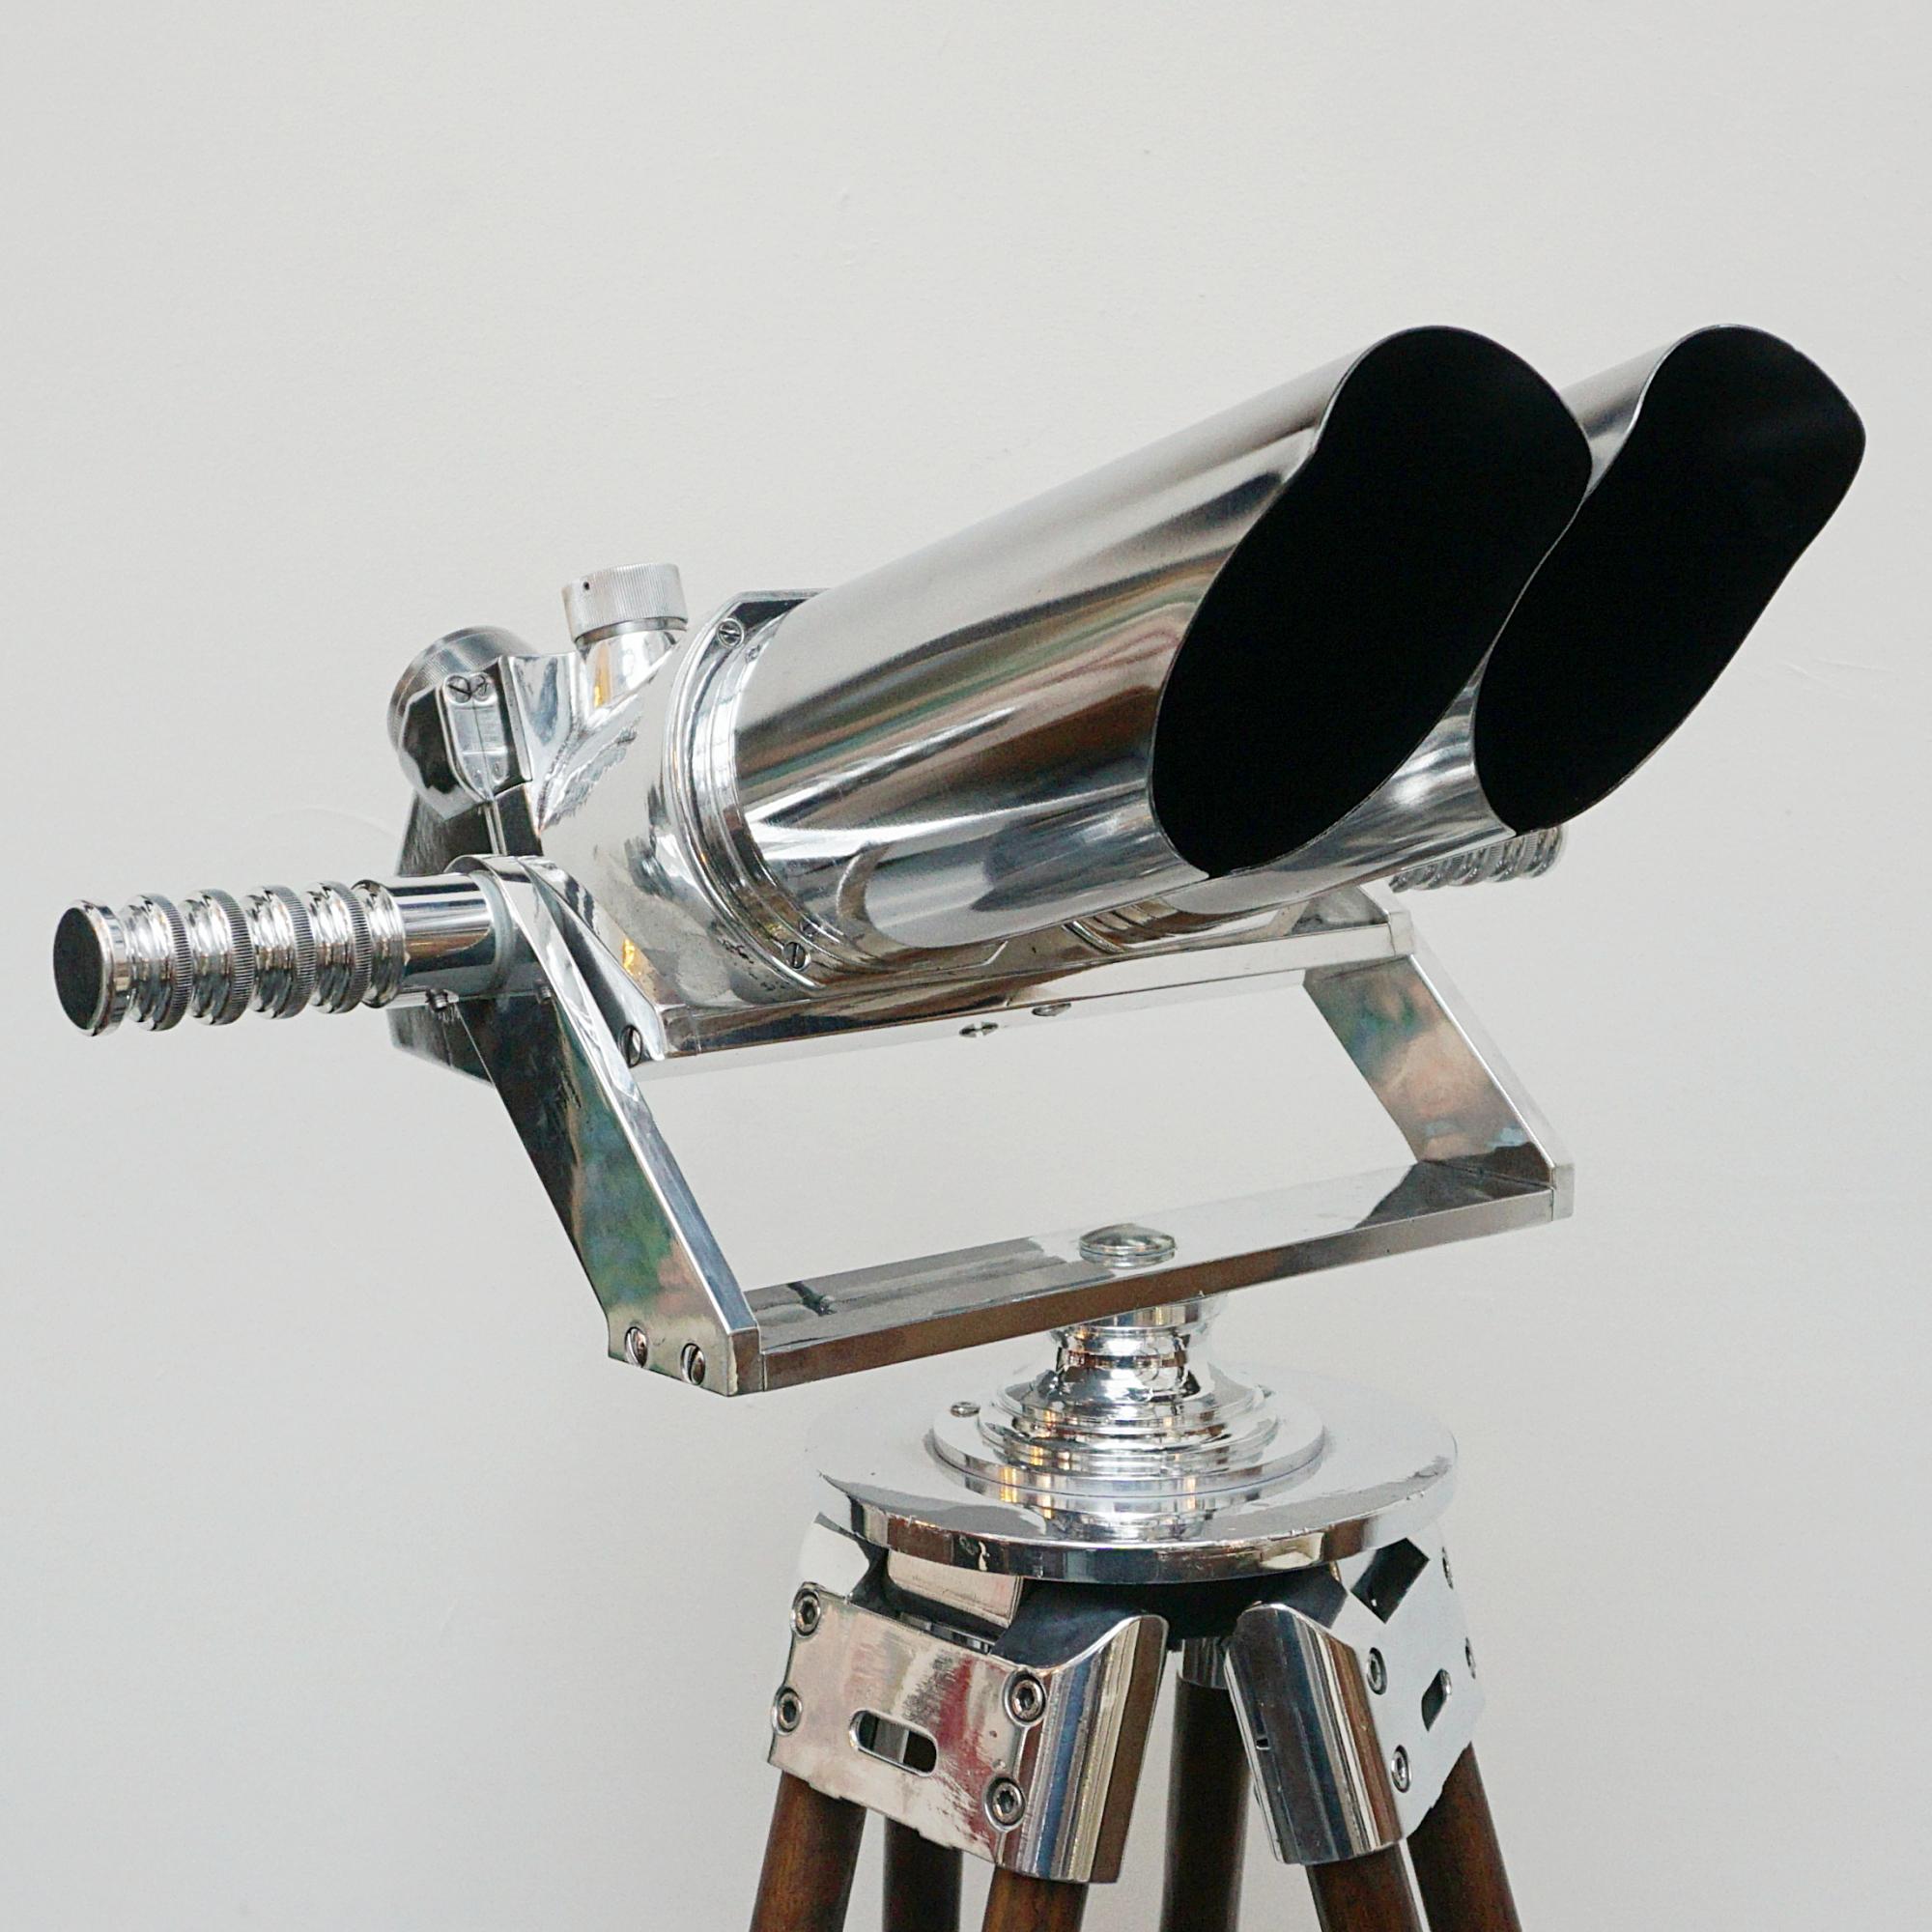 10 X 80 WW11 Marine Binoculars by Zeiss 2